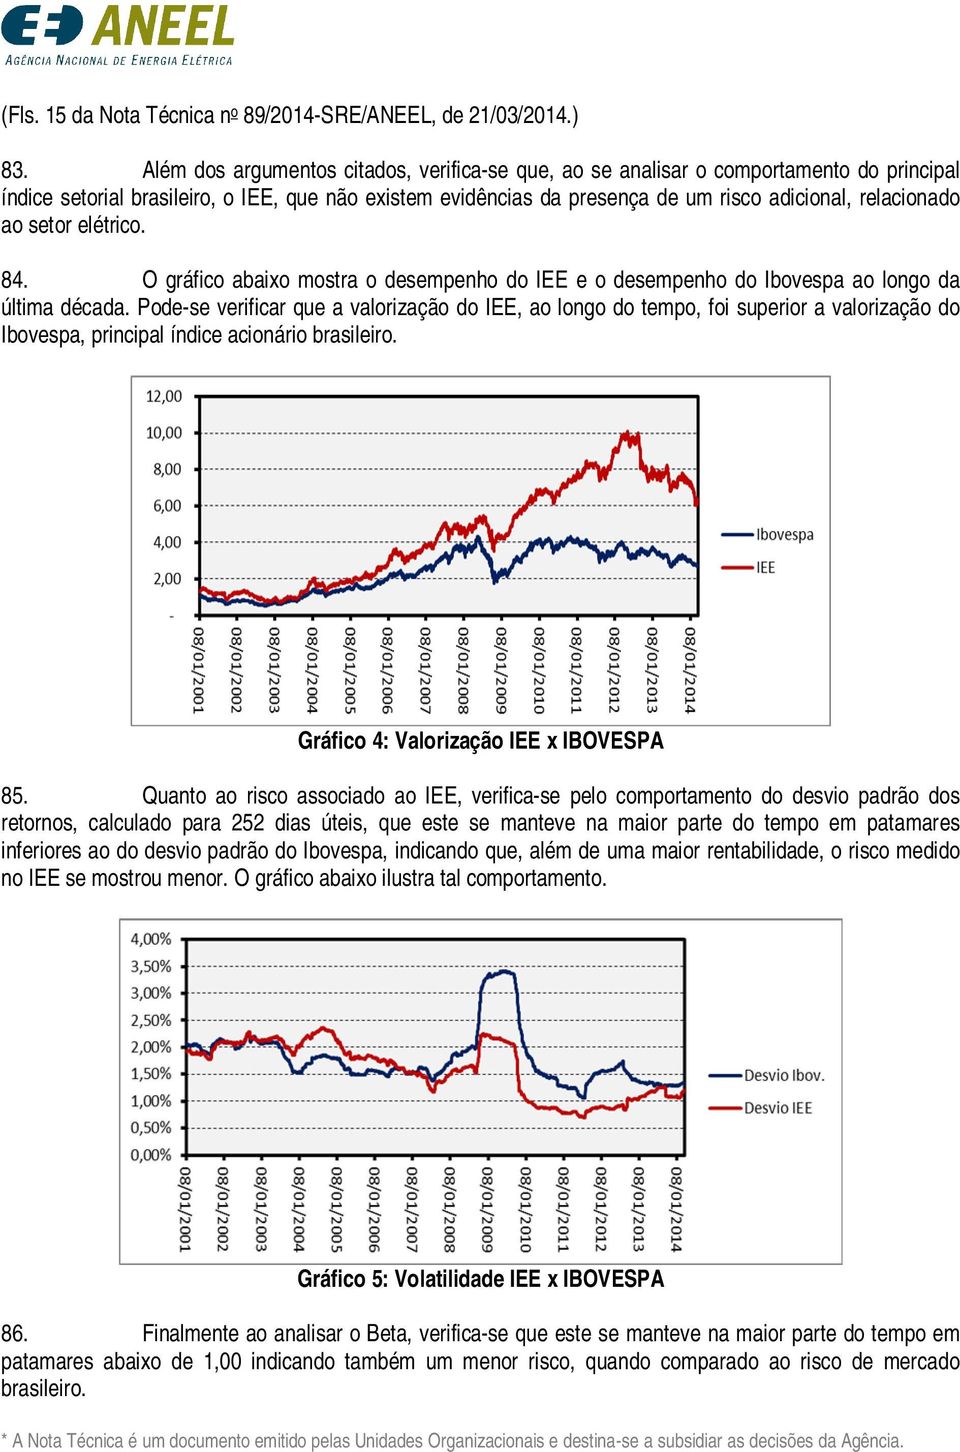 ao setor elétrico. 84. O gráfico abaixo mostra o desempenho do IEE e o desempenho do Ibovespa ao longo da última década.